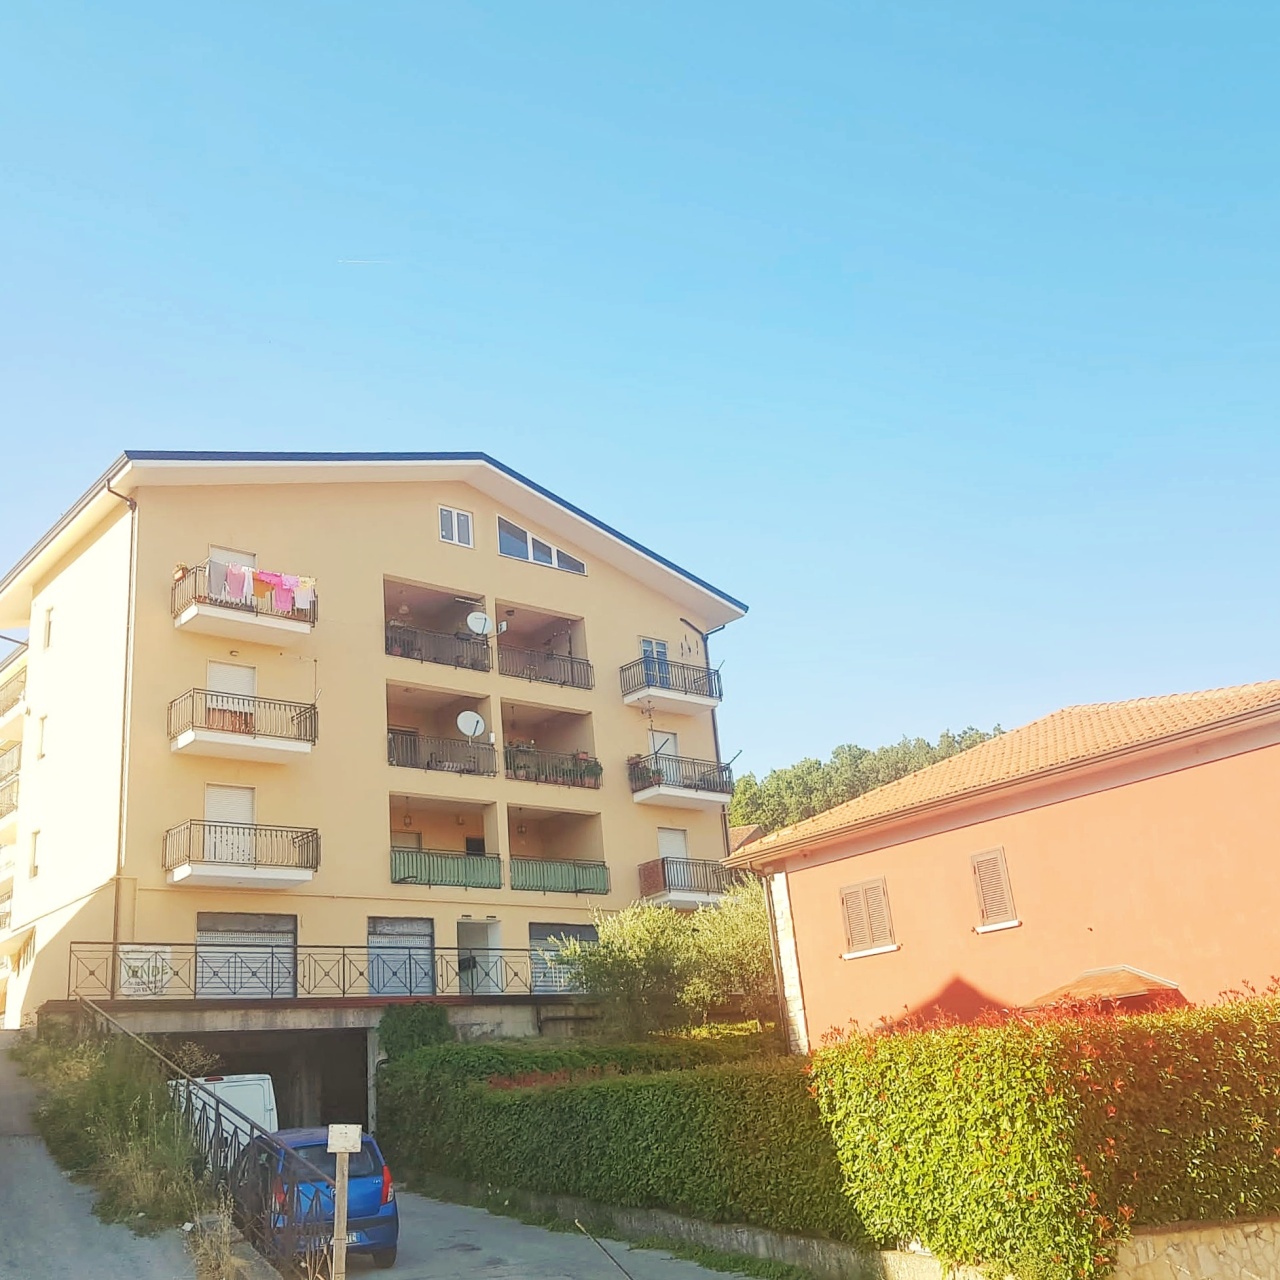 Appartamento in vendita a Capriglia Irpina, 5 locali, prezzo € 89.000 | PortaleAgenzieImmobiliari.it